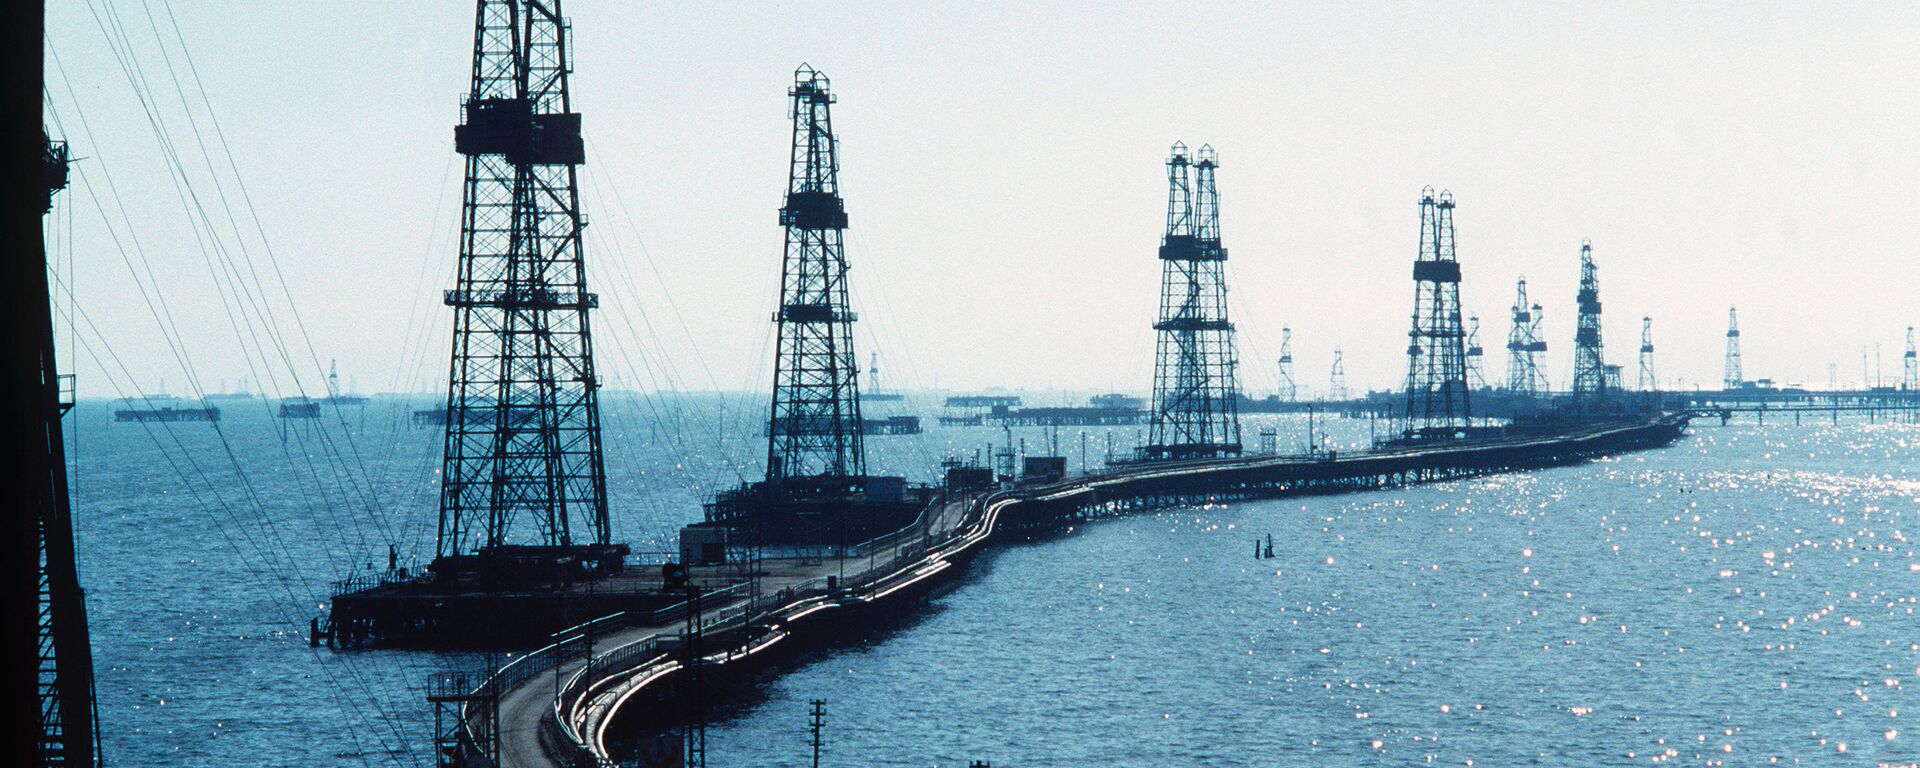 Нефтяные вышки на Каспийском море в Азербайджане - Sputnik Азербайджан, 1920, 03.06.2021